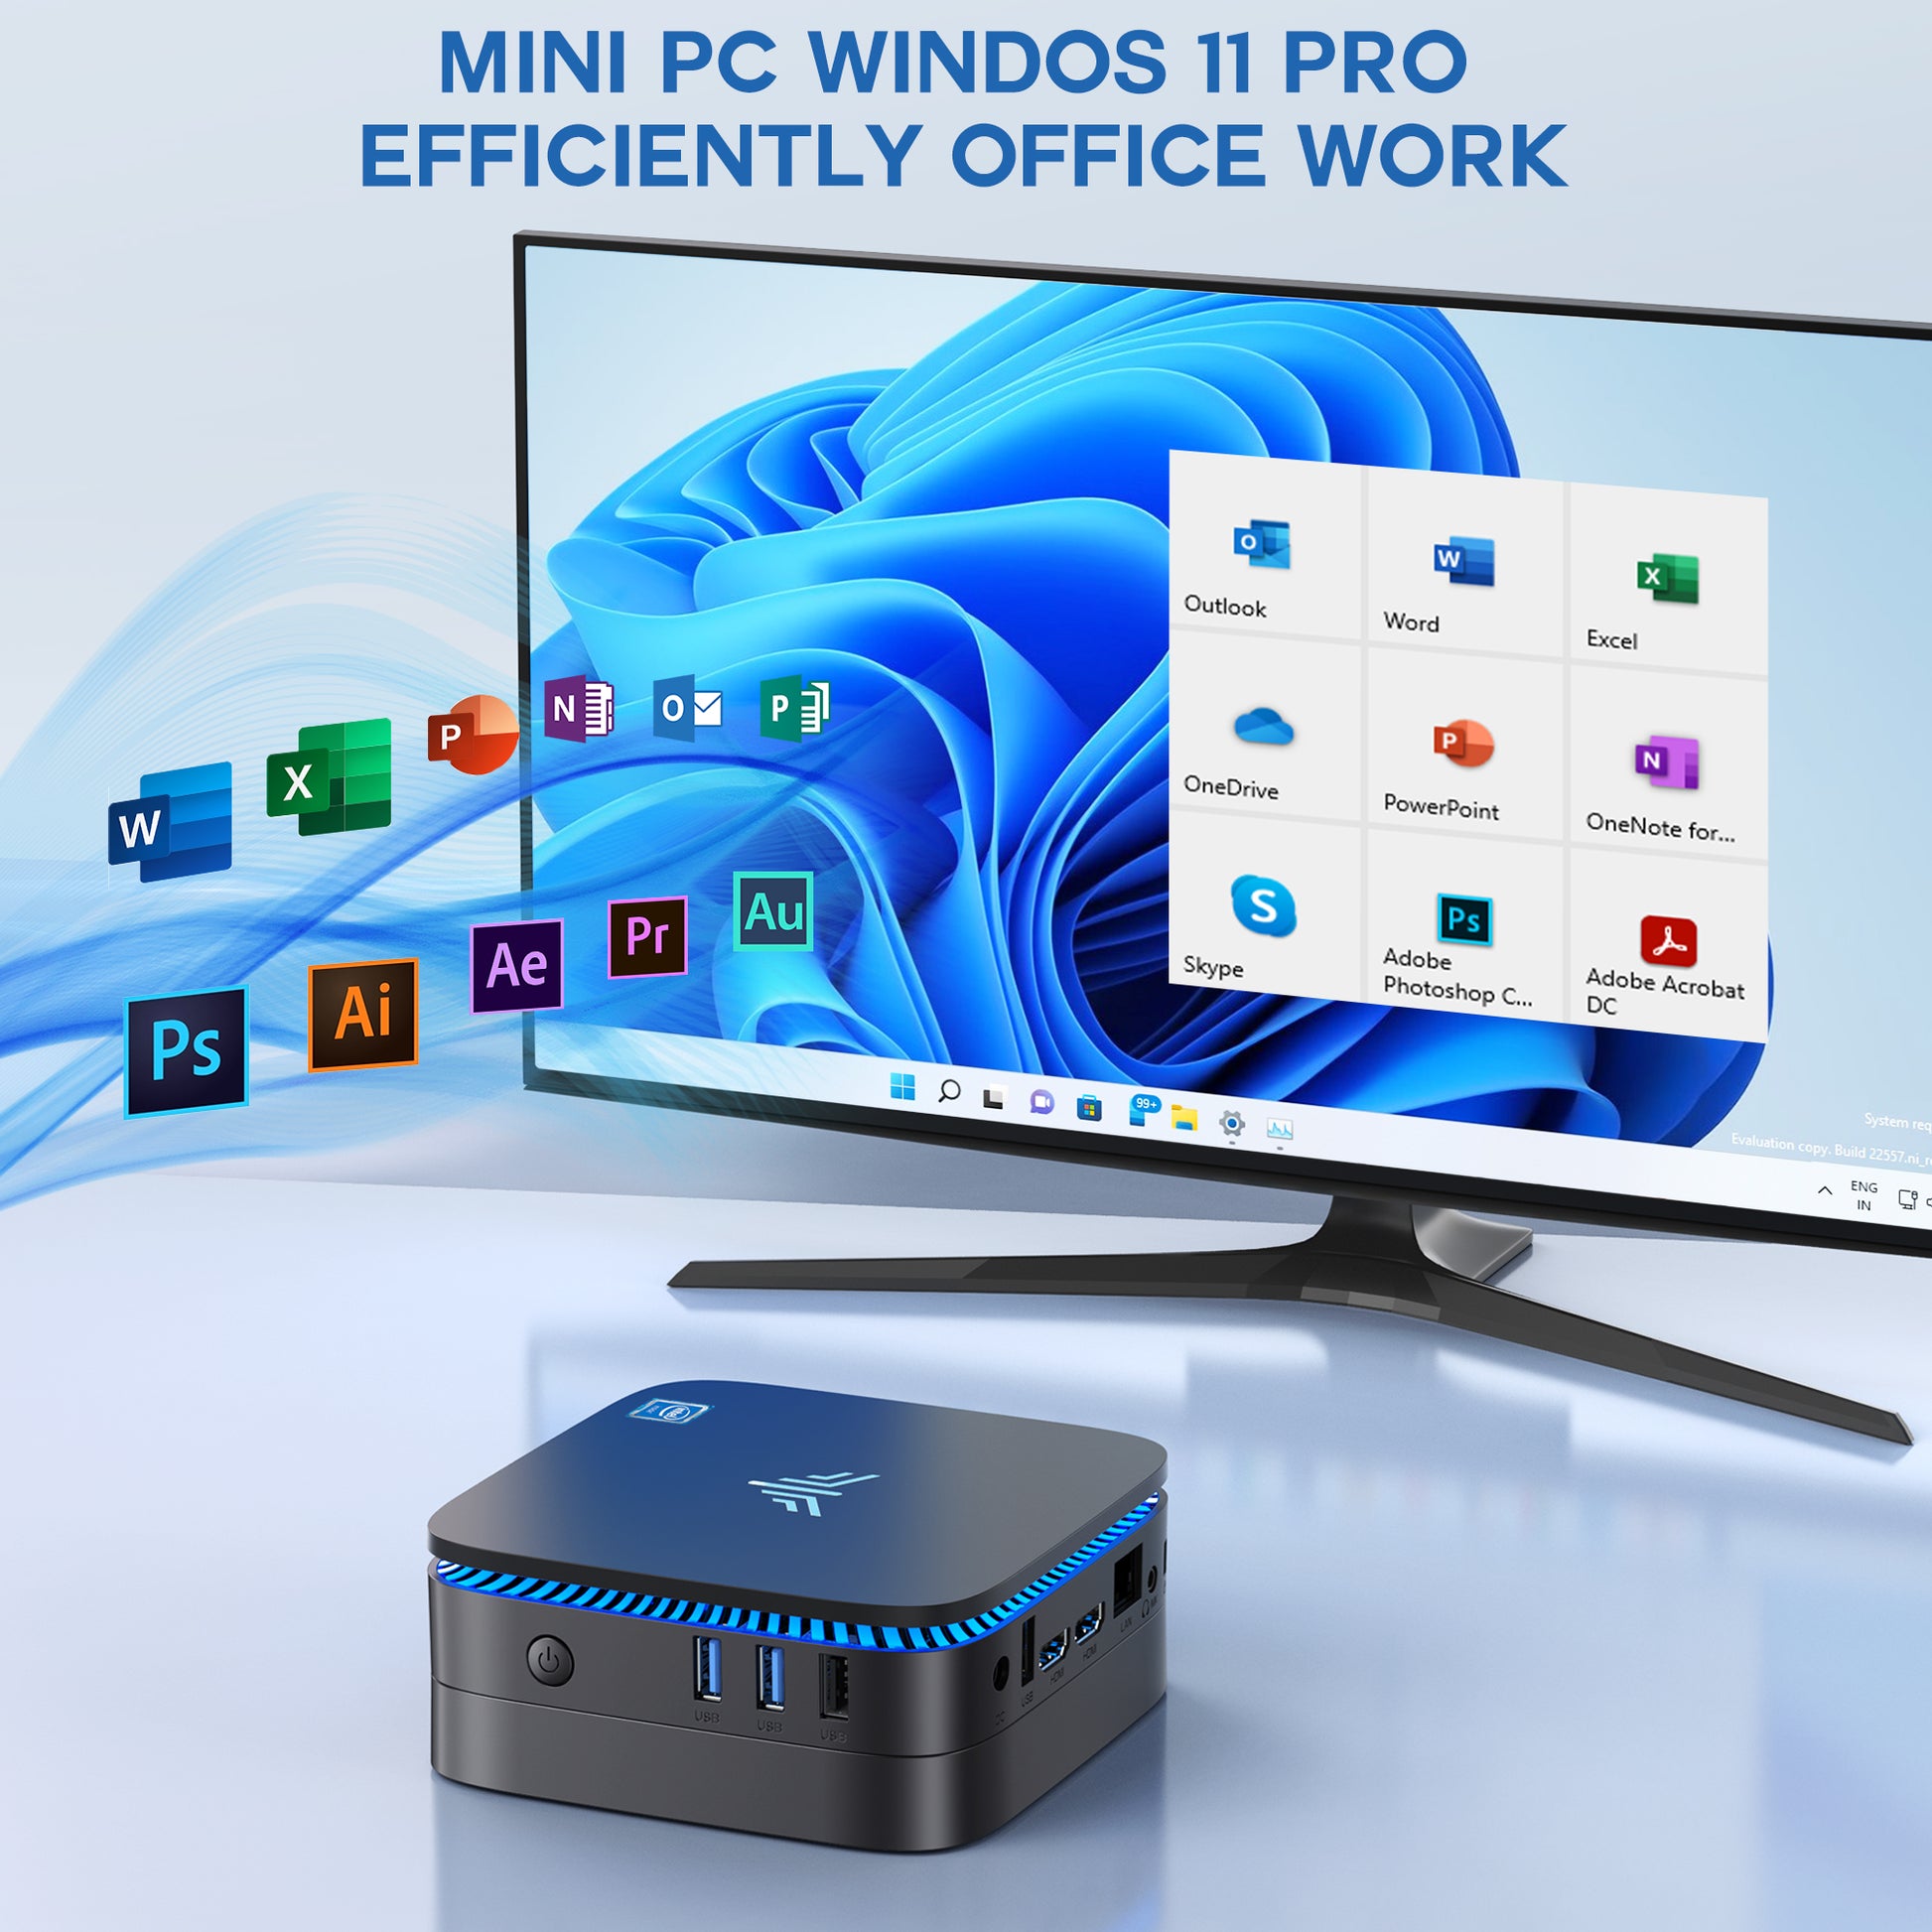 KAMRUI AK1 Plus Mini PC, Intel 12th Gen N95(up to 3.4GHz) Mini Desktop